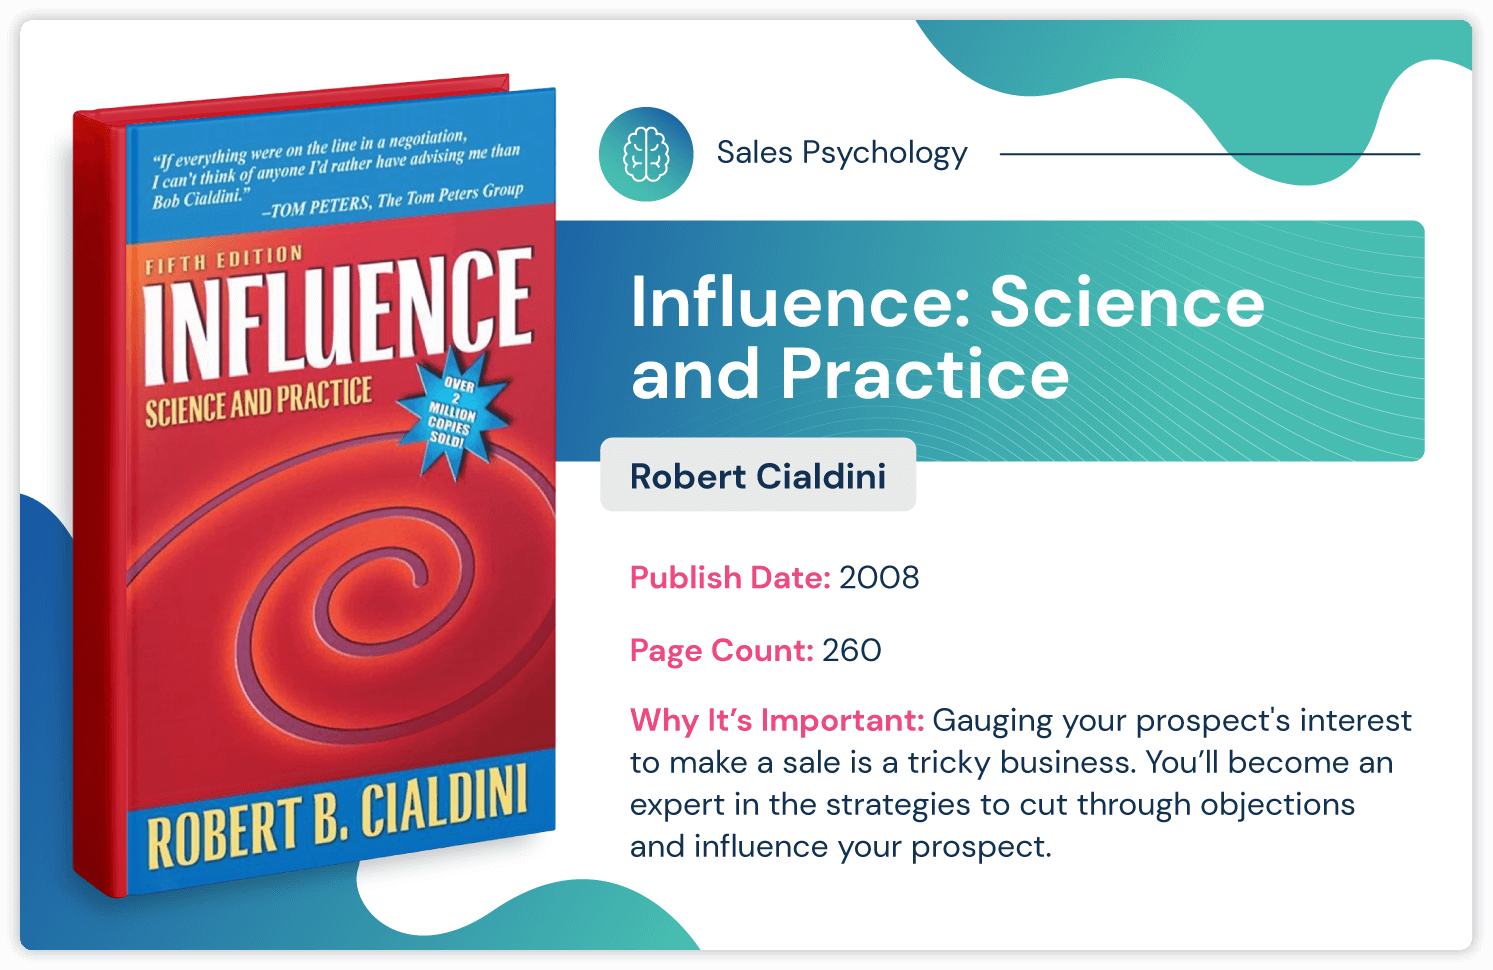 livro de psicologia de vendas chamado "Influência: Ciência e Prática" de Robert Cialdini sobre como influenciar com estratégia de vendas; publicado em 2008 e 260 páginas.